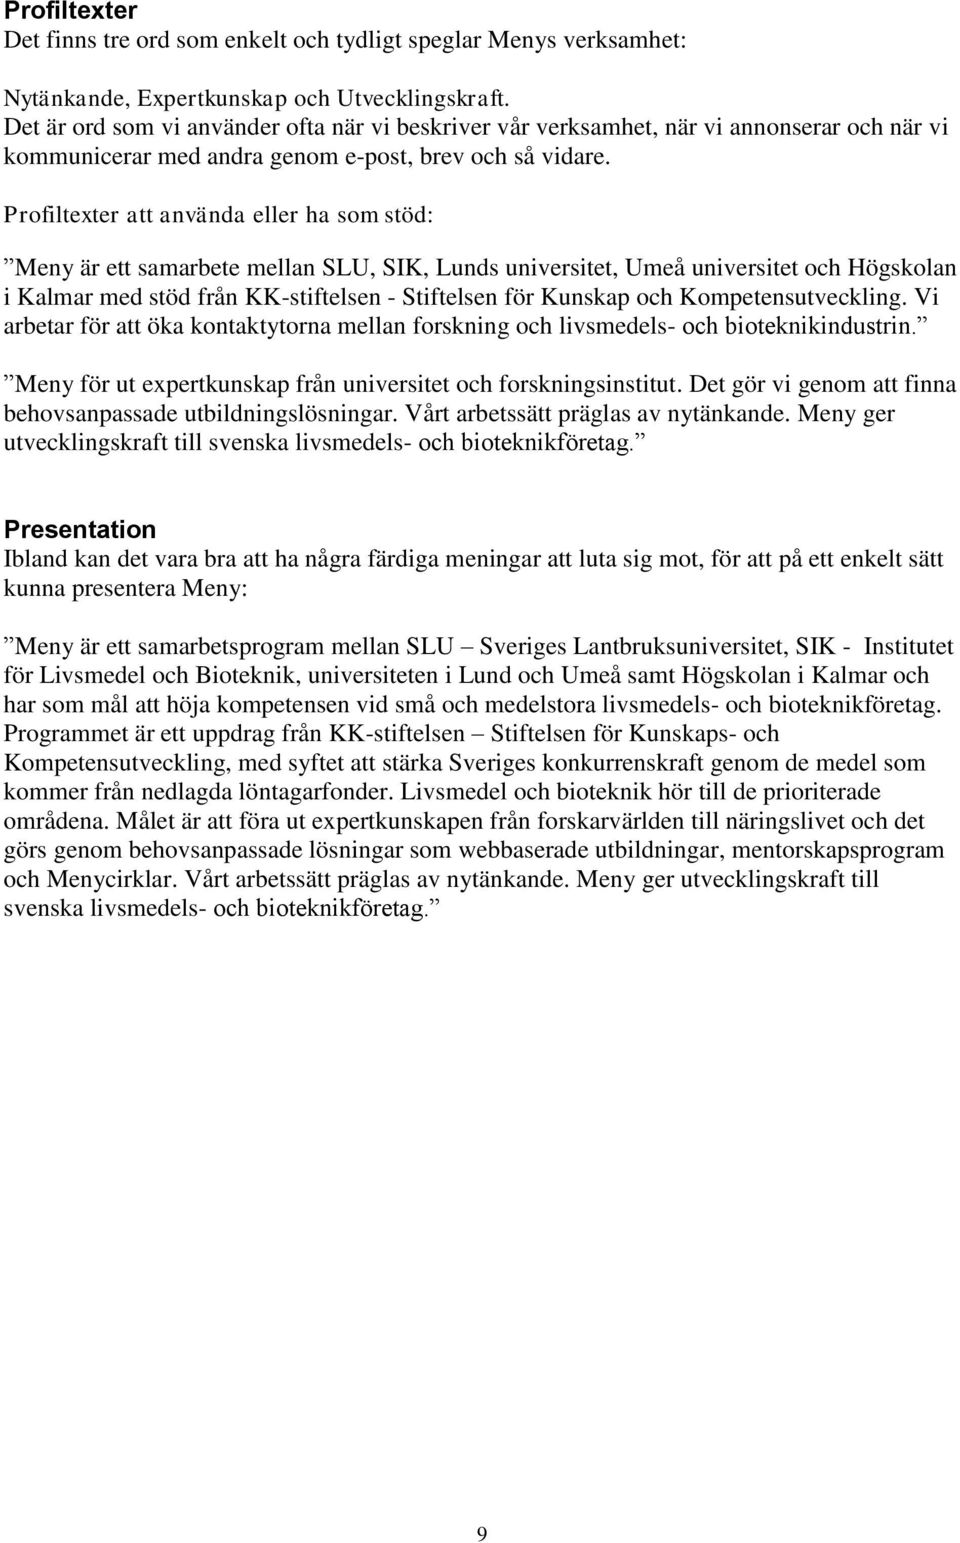 Profiltexter att använda eller ha som stöd: Meny är ett samarbete mellan SLU, SIK, Lunds universitet, Umeå universitet och Högskolan i Kalmar med stöd från KK-stiftelsen - Stiftelsen för Kunskap och